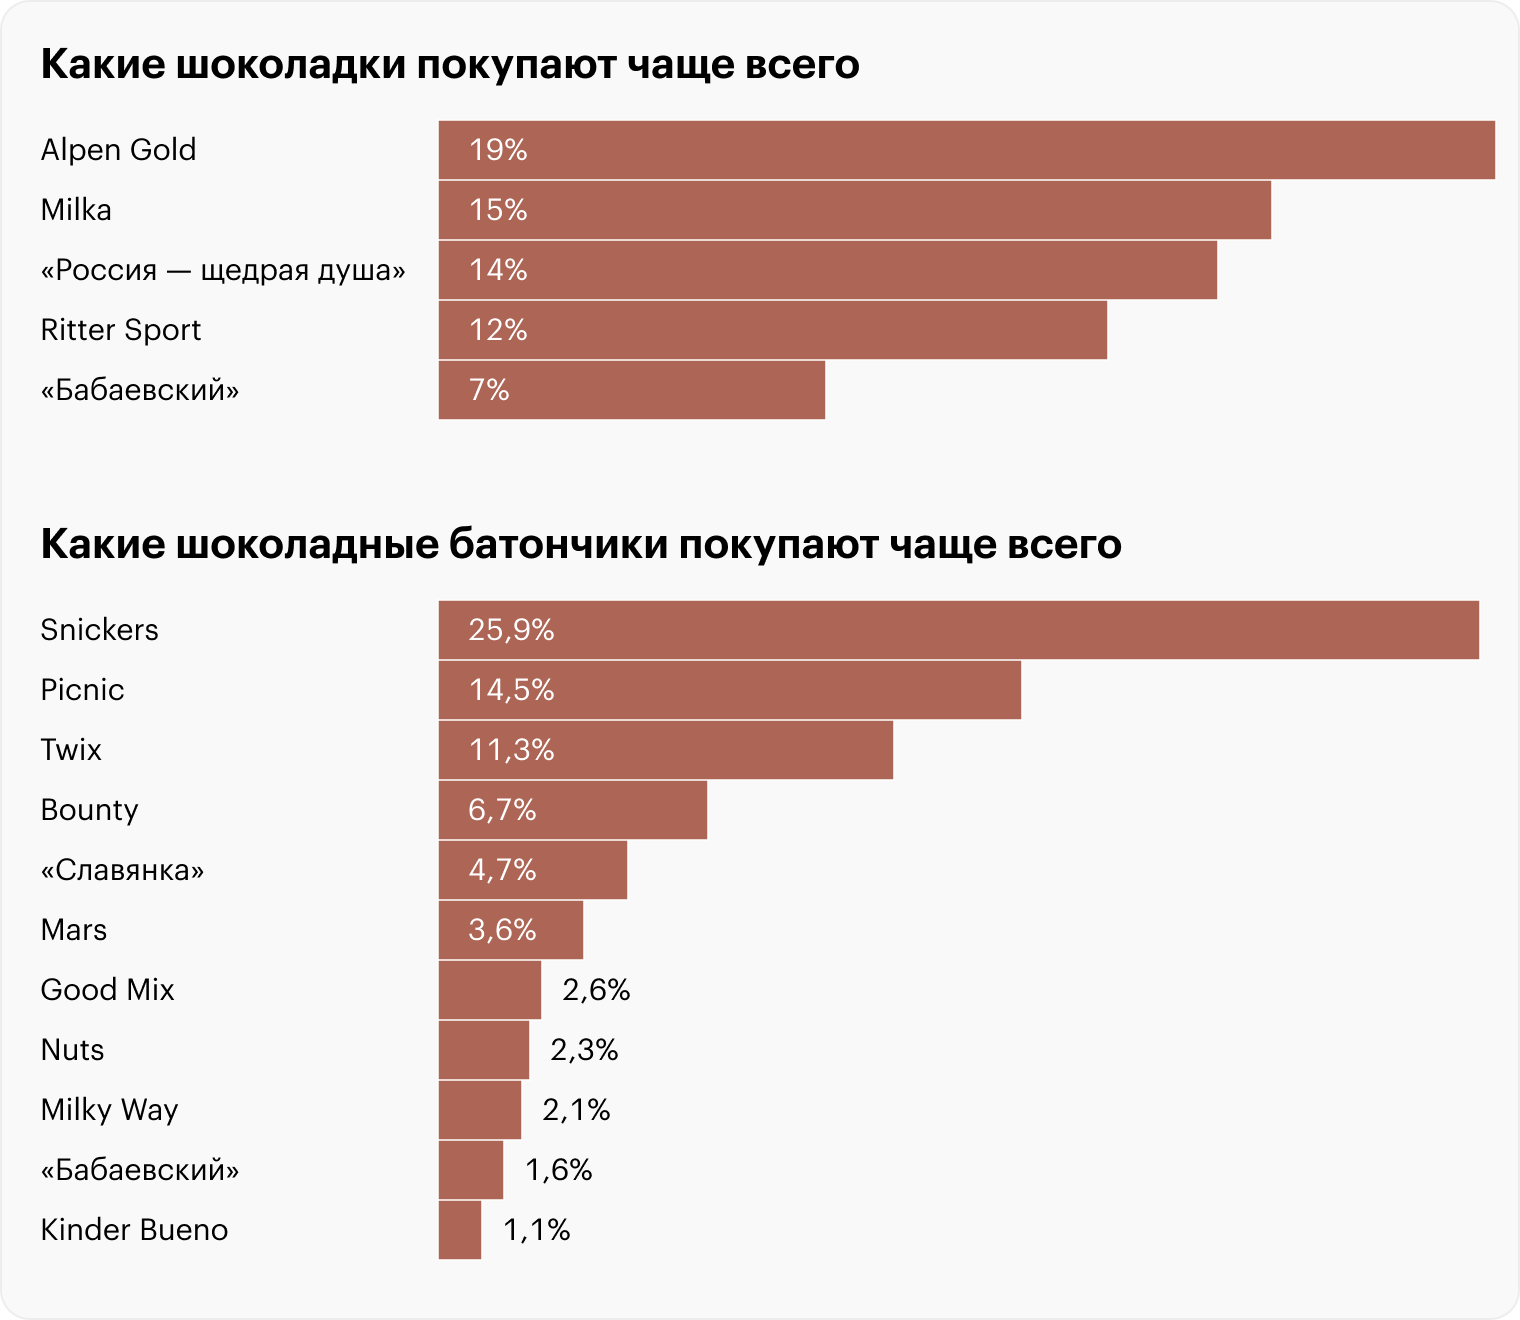 Источники: retail.ru по данным «Сбермаркета», NTech